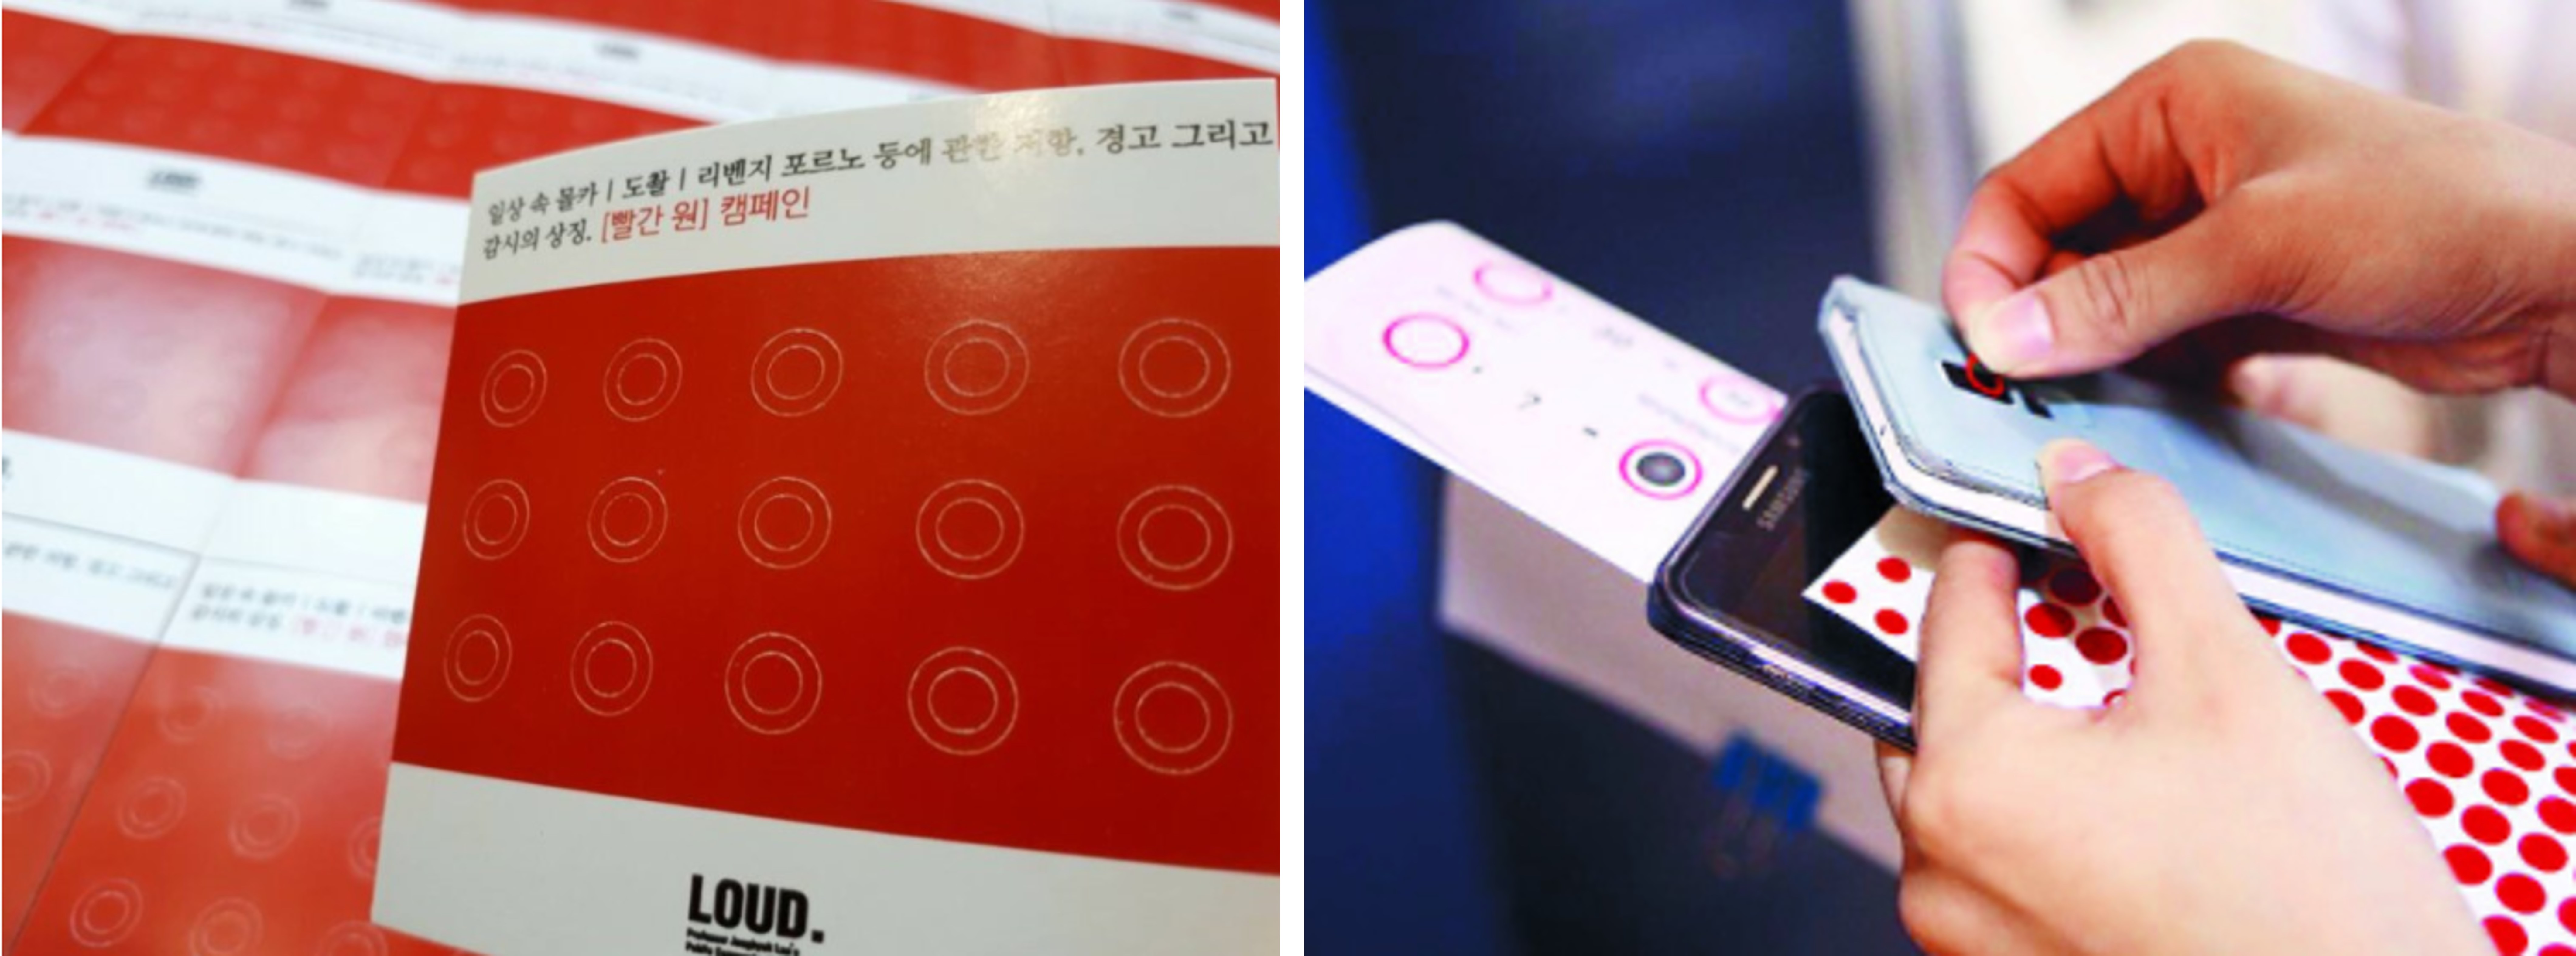 2017년 광운대 공공소통연구소(LOUD)가 제안하여 경기남부경찰청과 진행한 <빨간 원 프로젝트> - 스마트폰 카메라에 빨간색 원 스티커를 붙여 몰카에 대한 저항을 드러냈다.